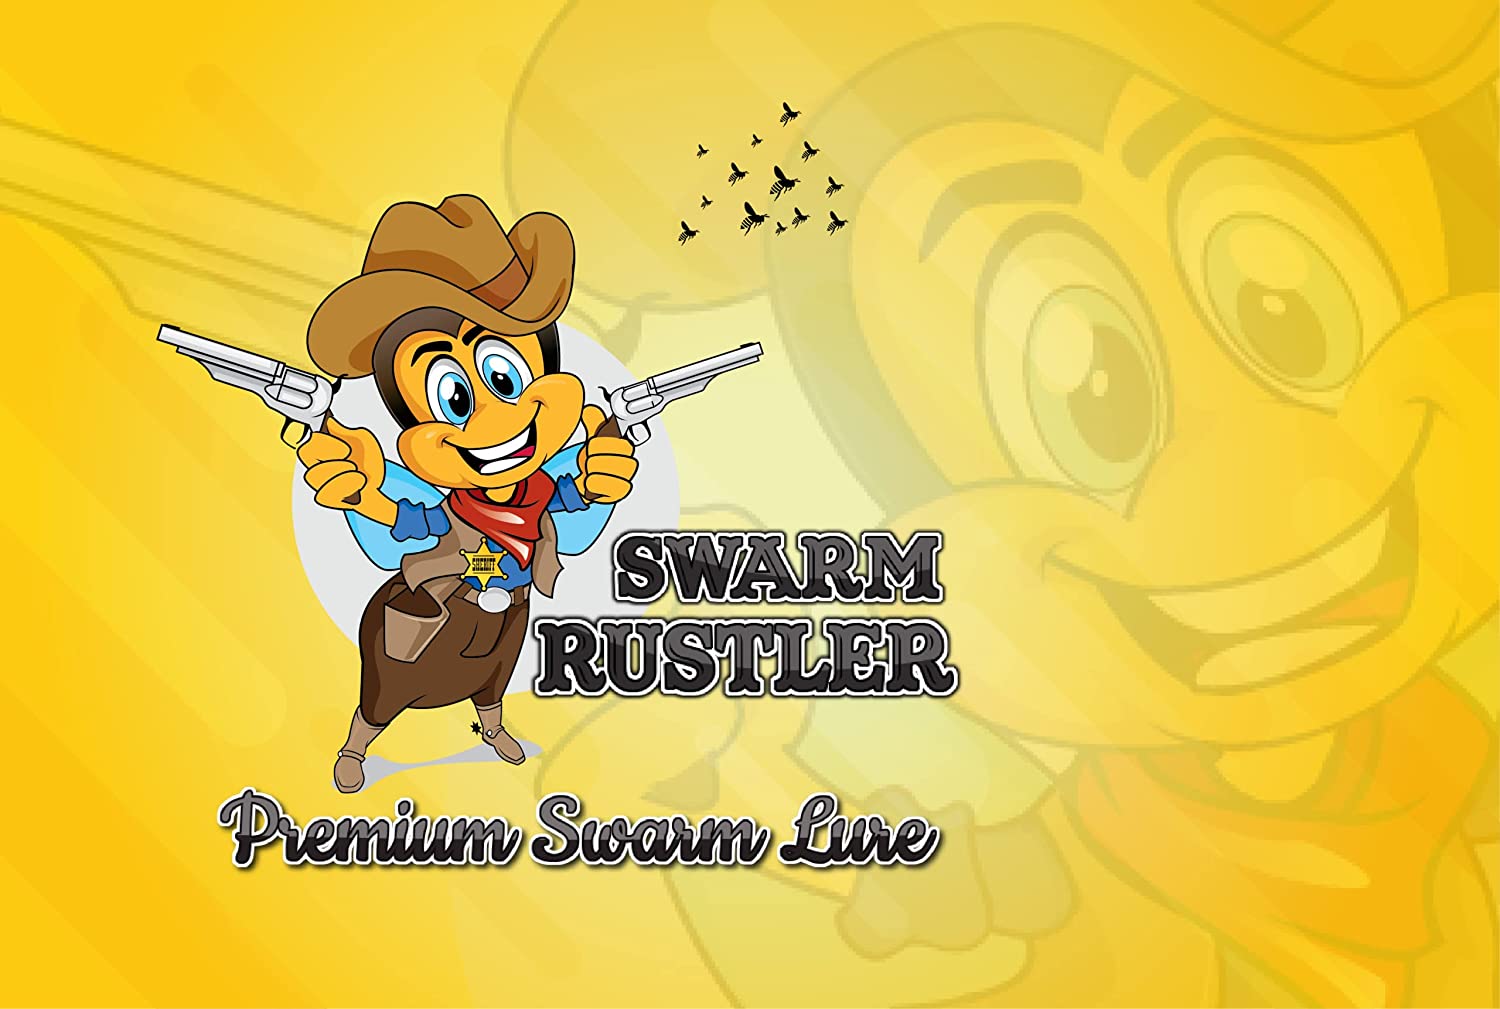 Swarm rustler premium swarm lure.